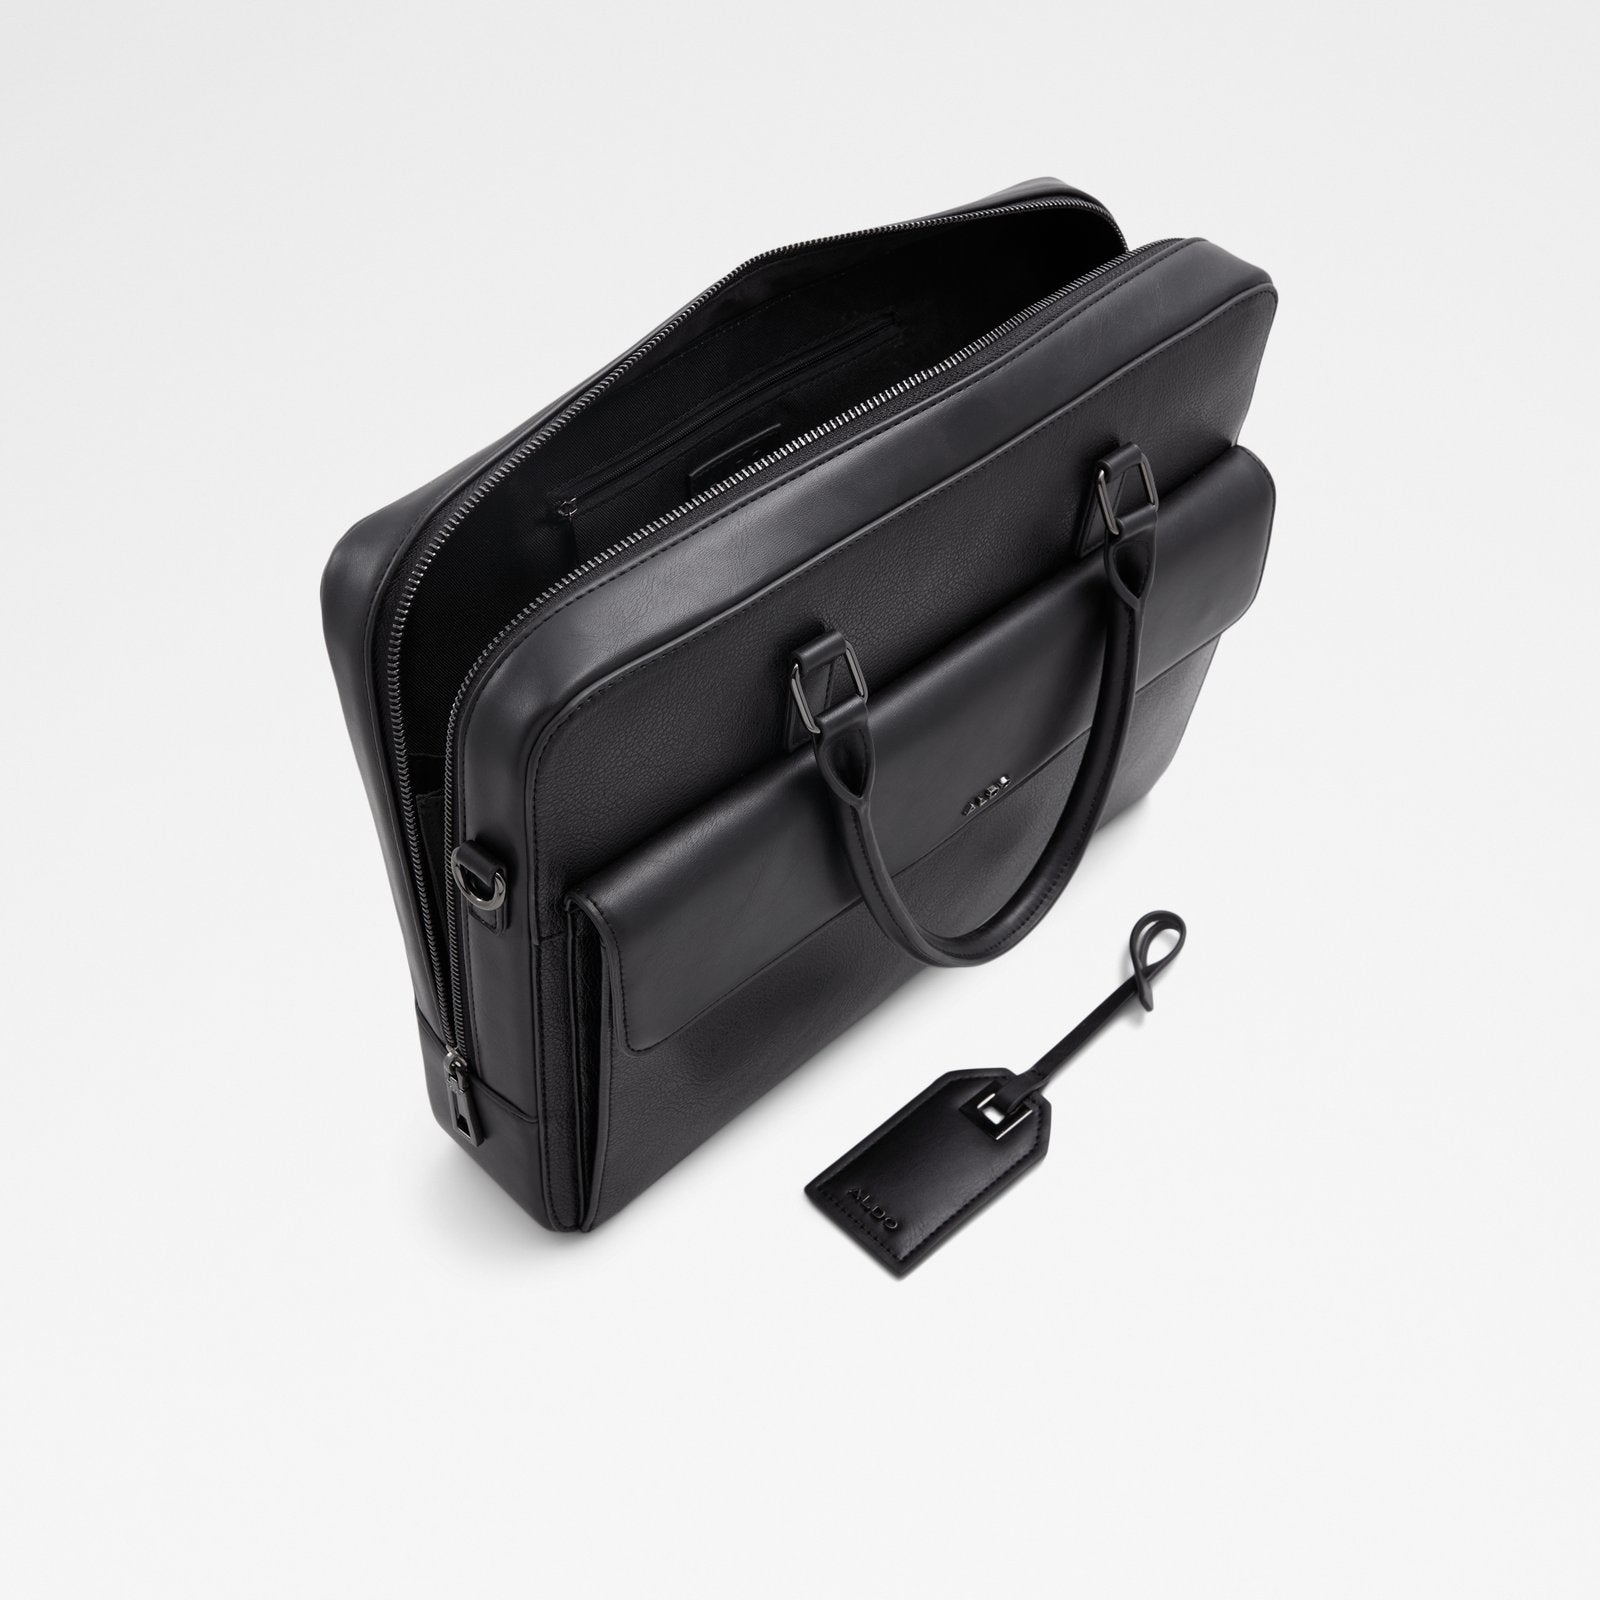 Onilidon / Laptop Bag Bag - Black - ALDO KSA